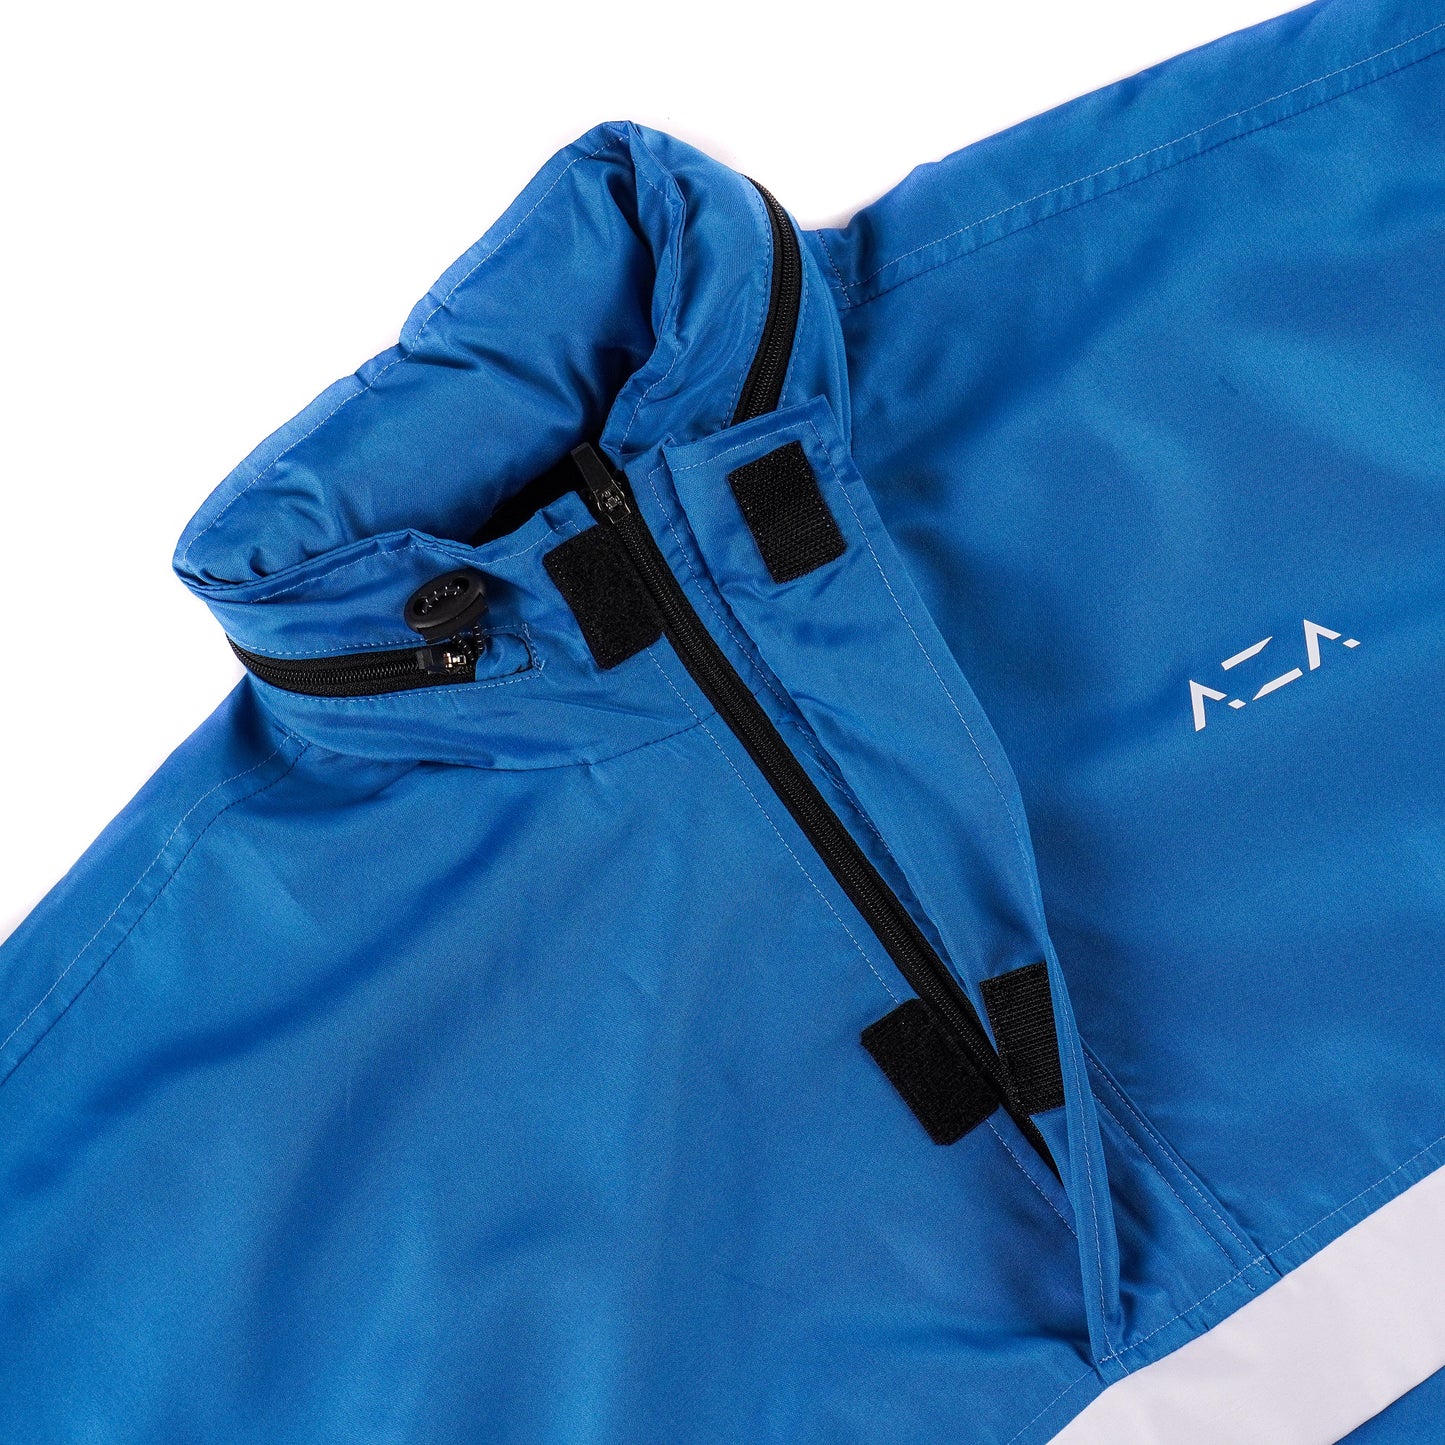 AZA Jacket Half Zipper Let's Goal Edition - Blue